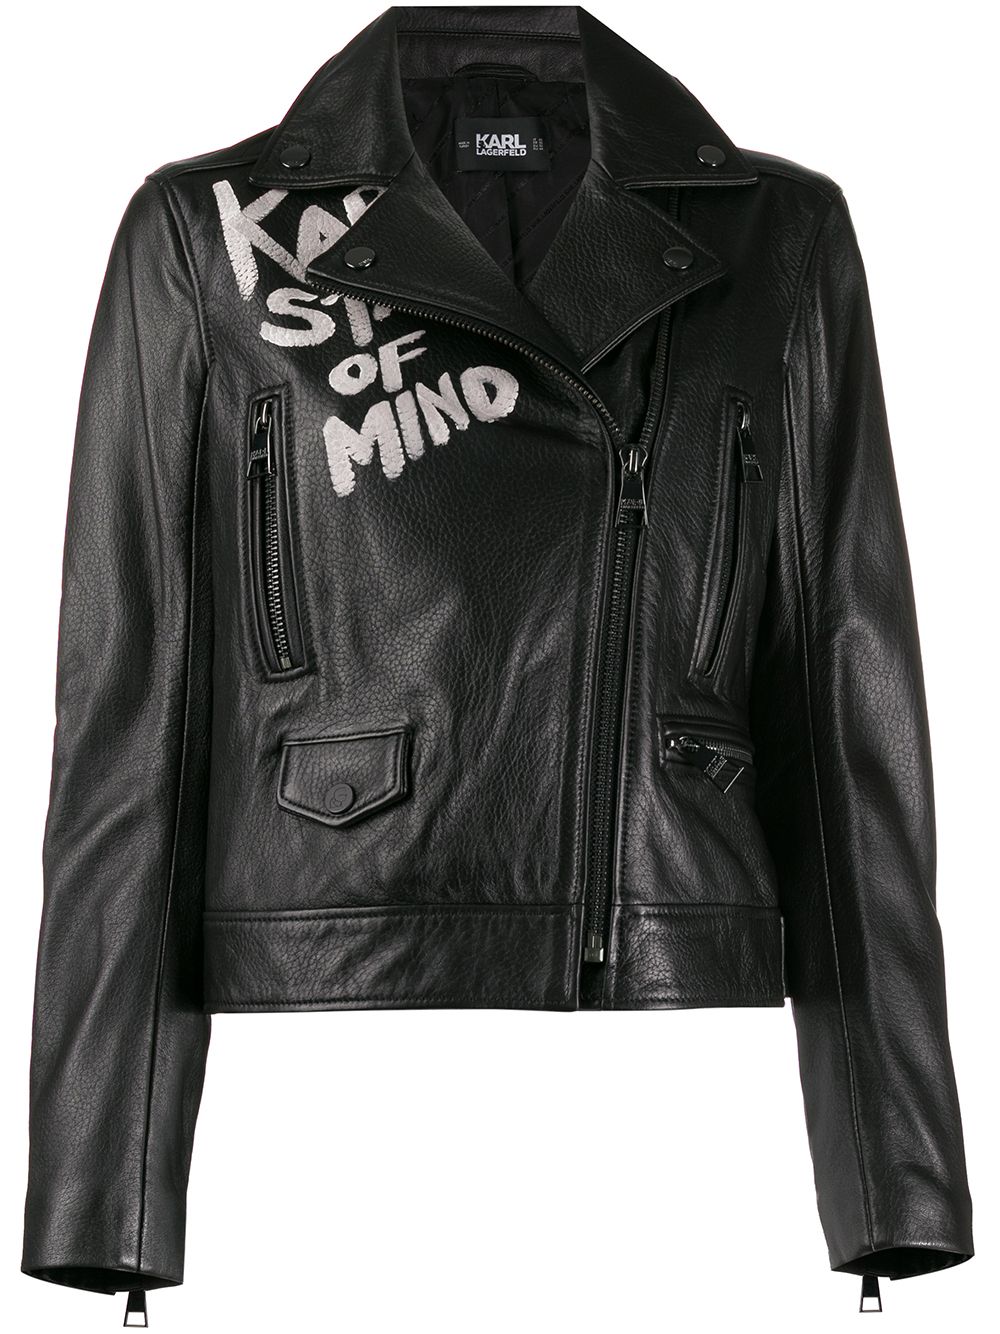 фото Karl Lagerfeld байкерская куртка с надписью